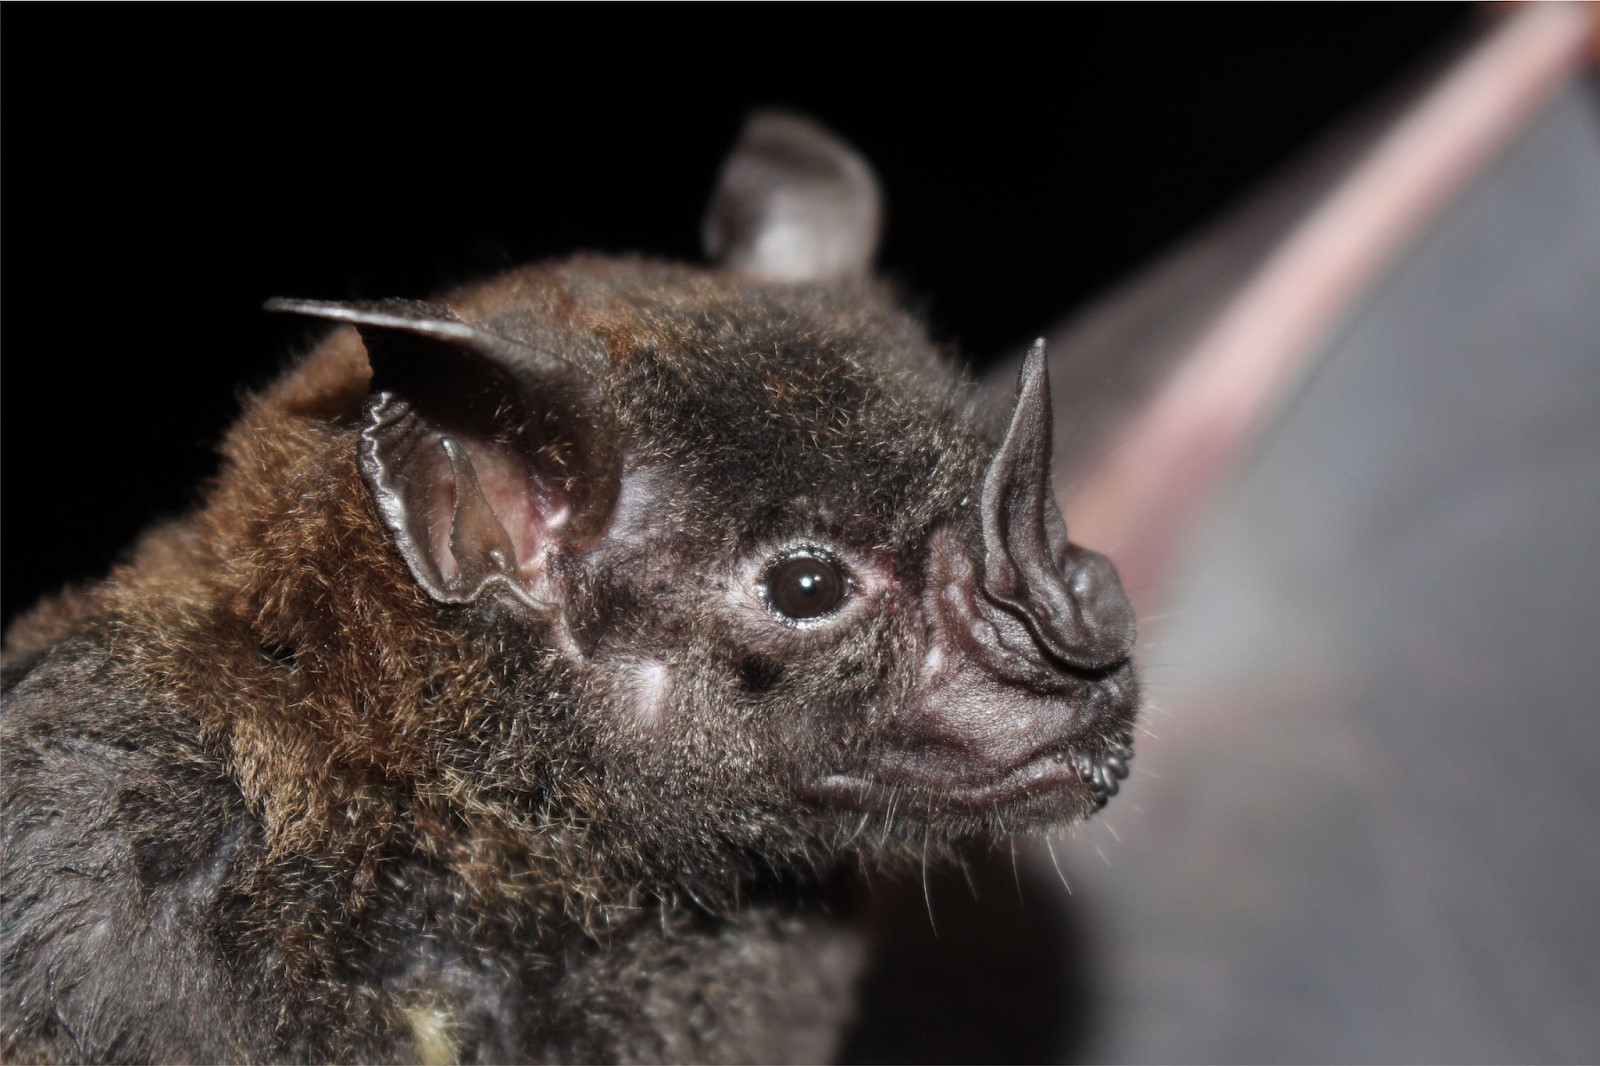 A Close-Up Shot of a Murcielago Bat